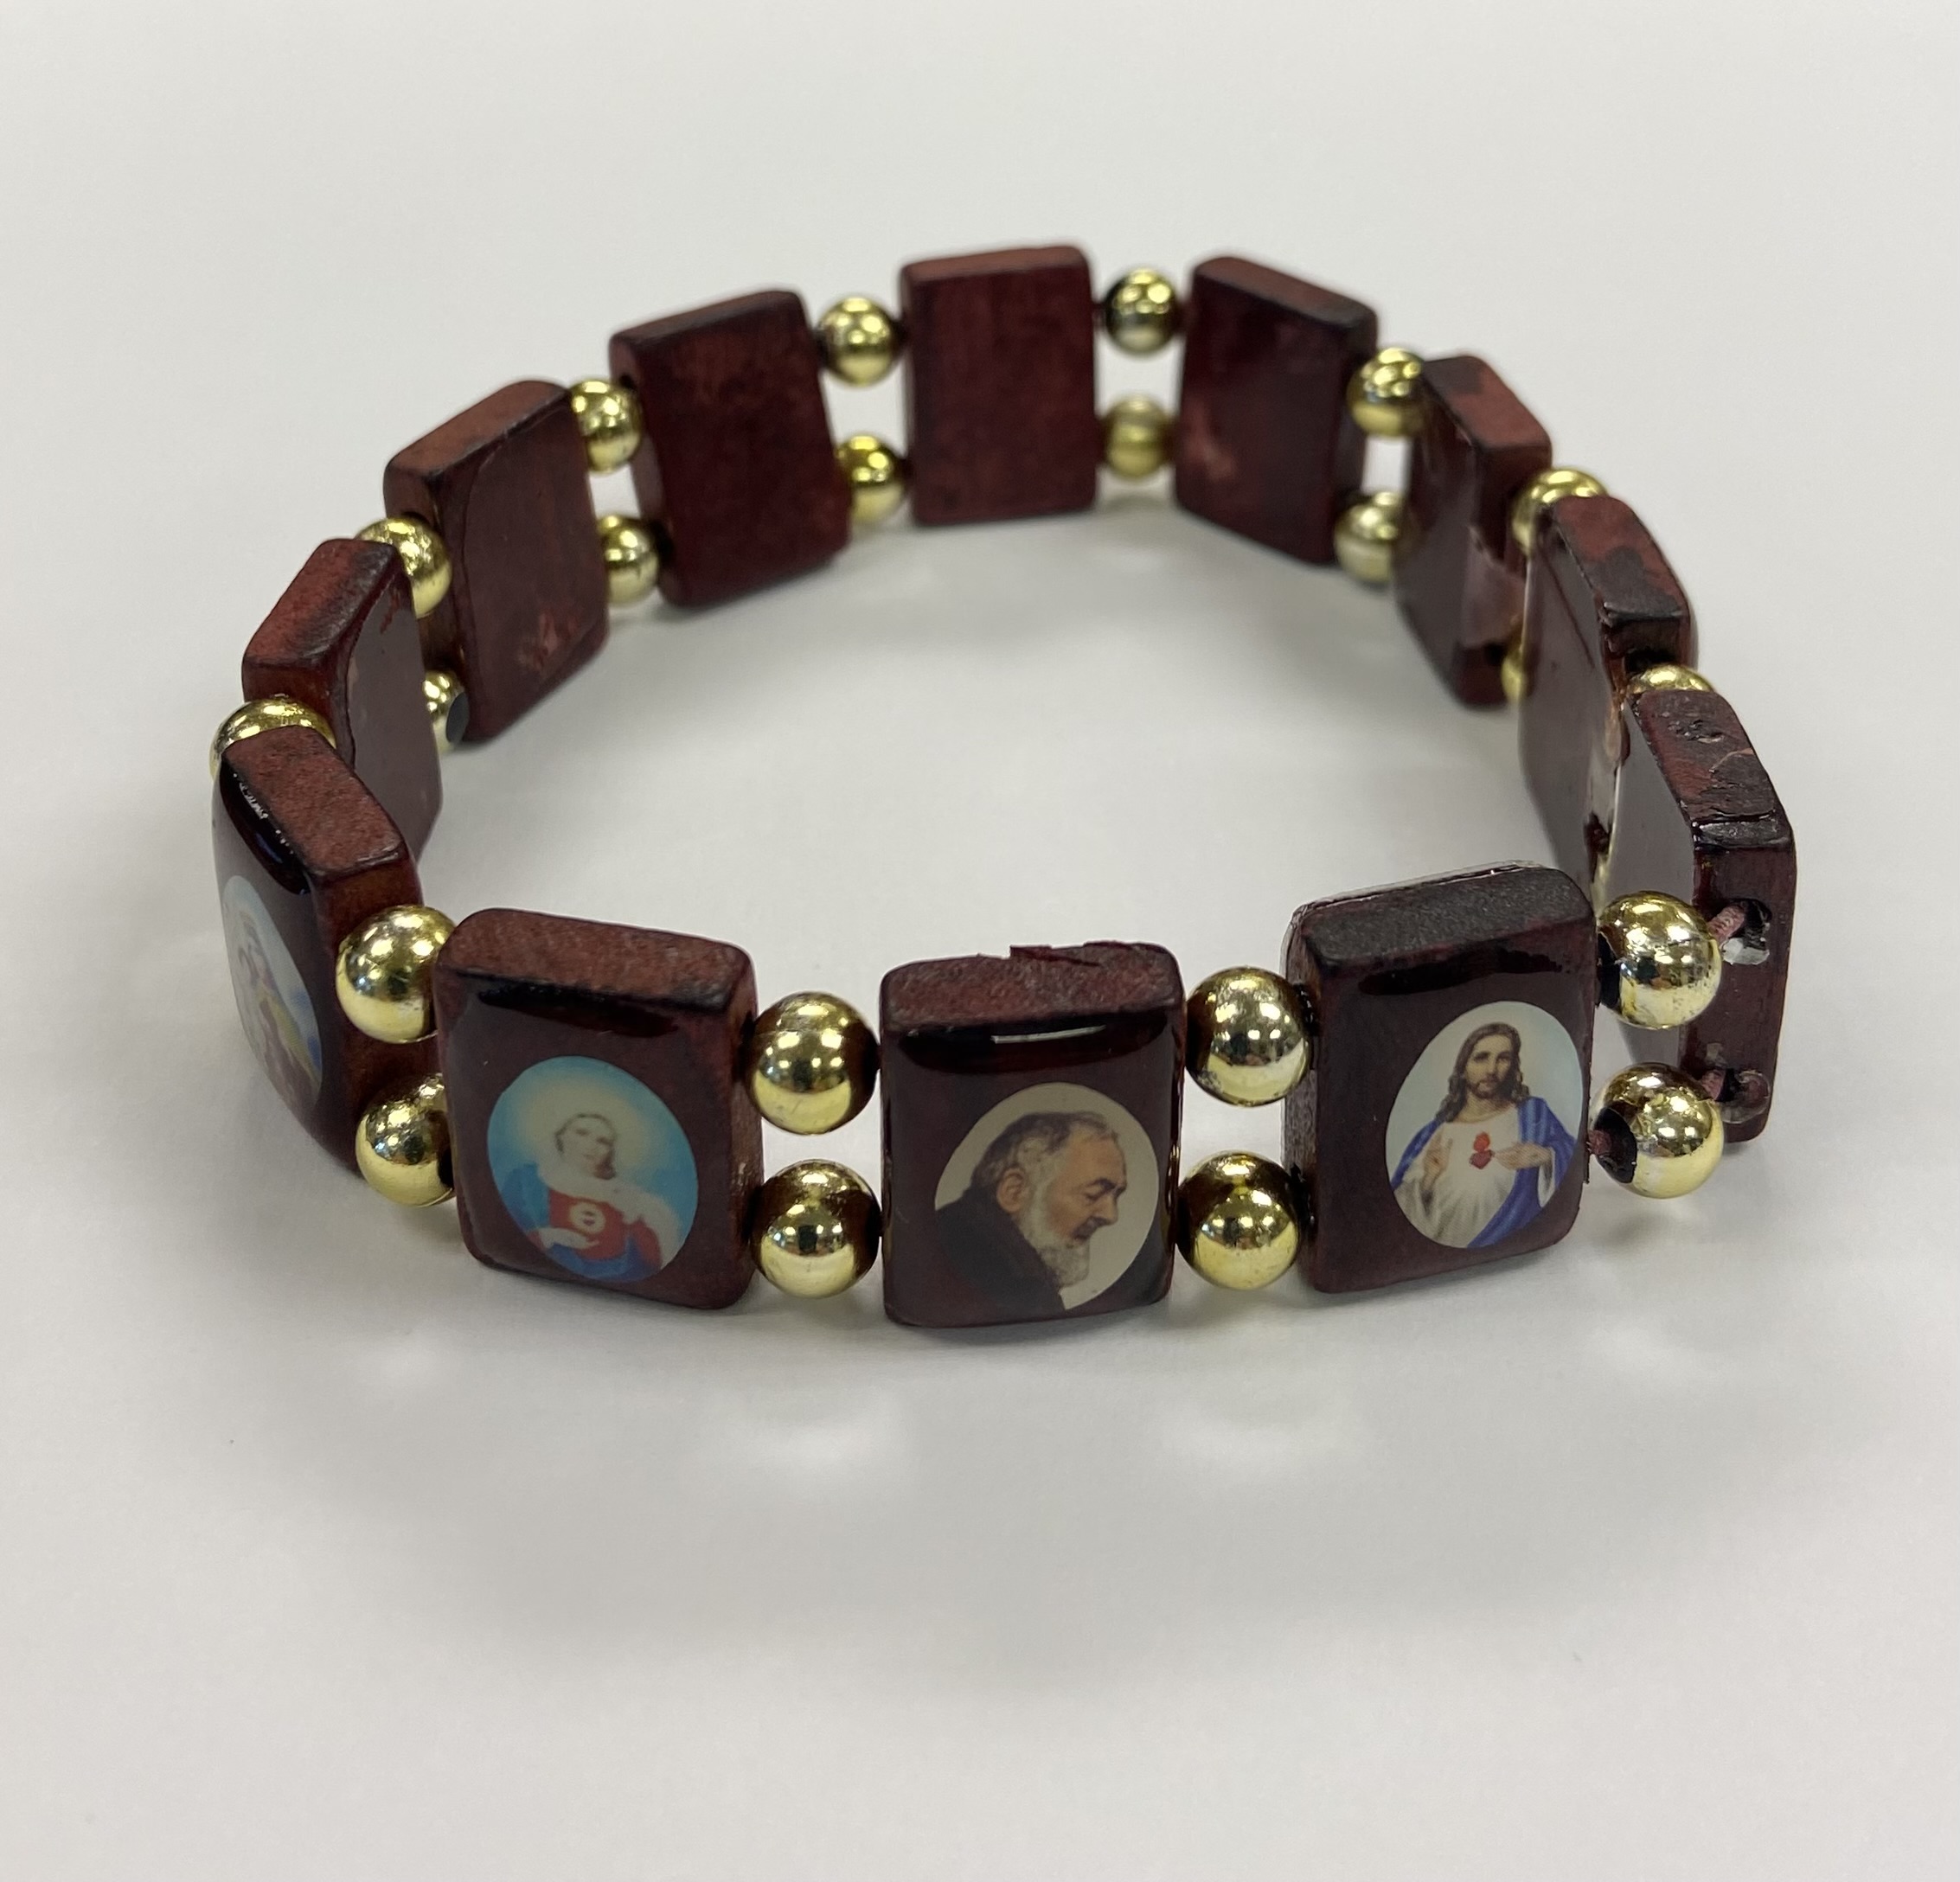 Adult Size Padre Pio and Various Saints Wooden Bracelet